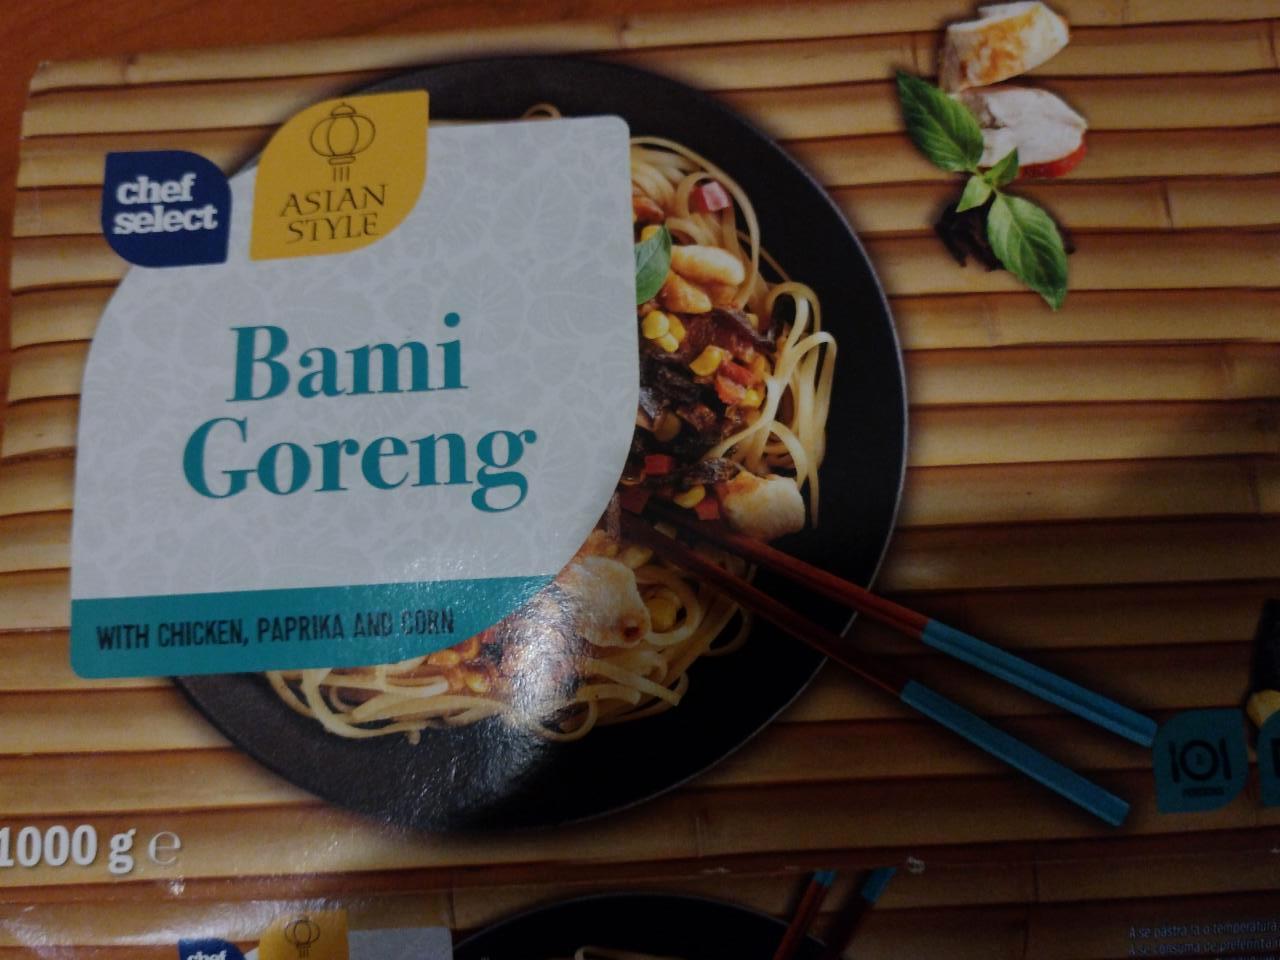 Képek - Bami goreng csirkés paprikás asian style Chef Select